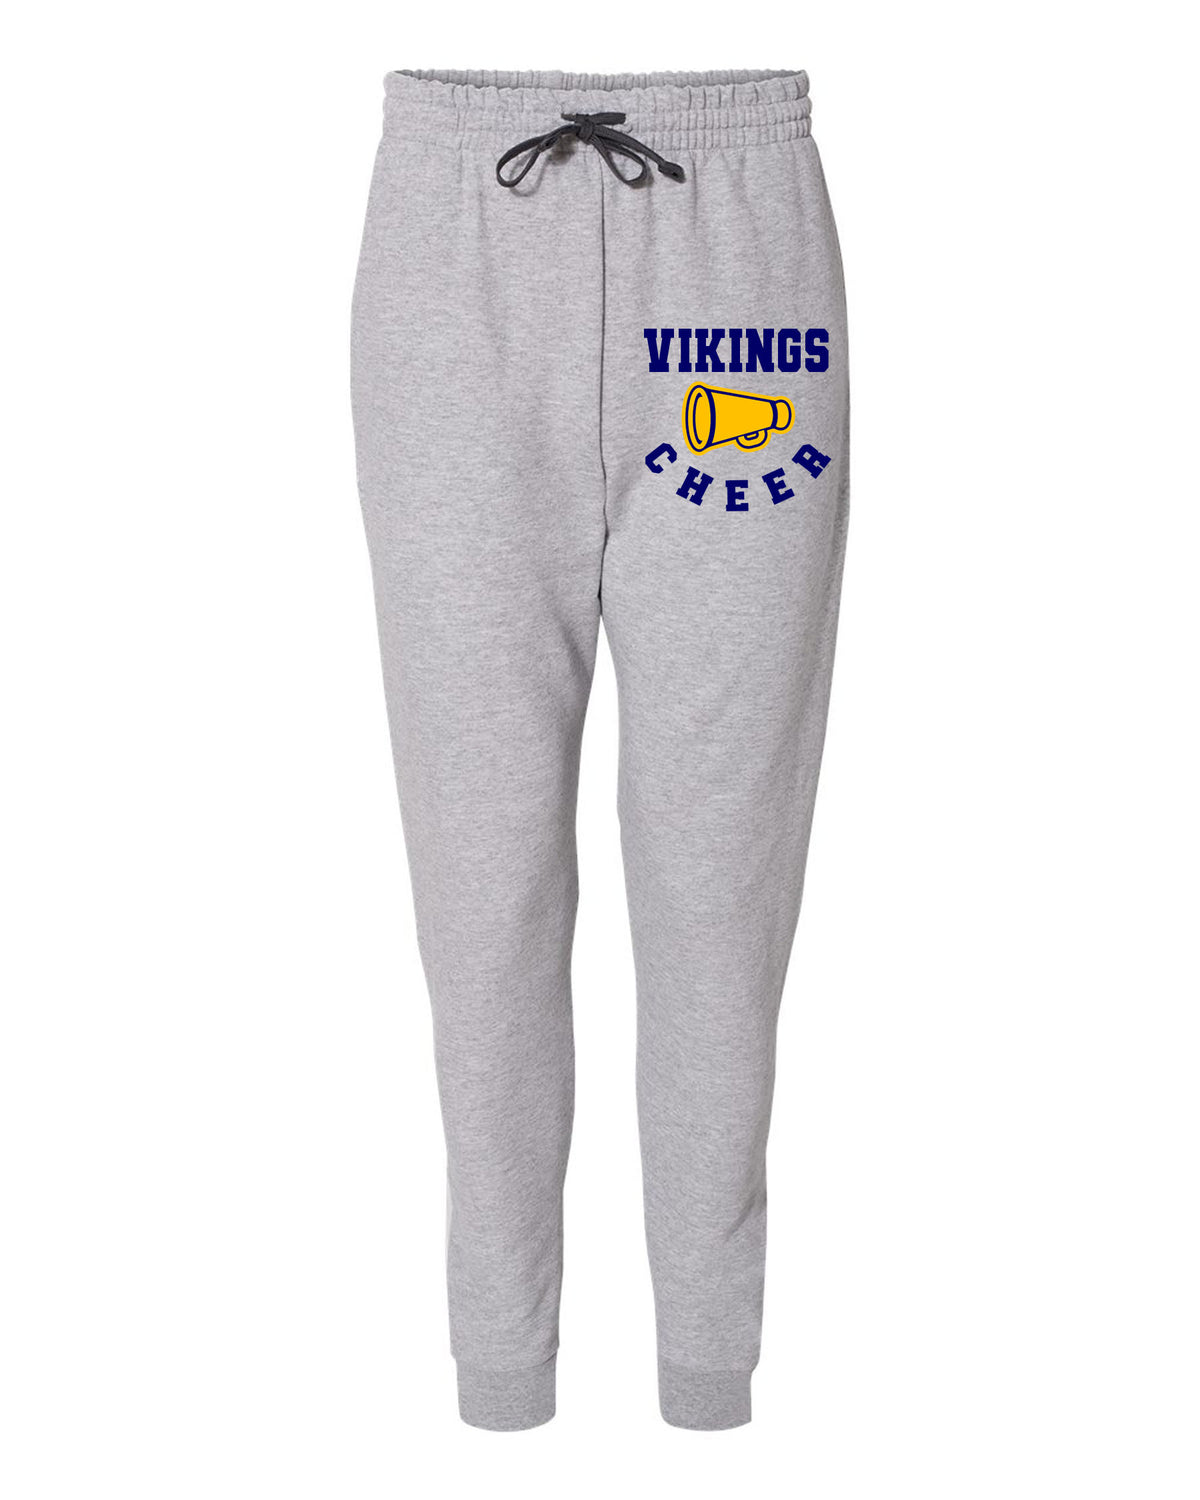 Vernon Vikings Cheer Design 13 Sweatpants